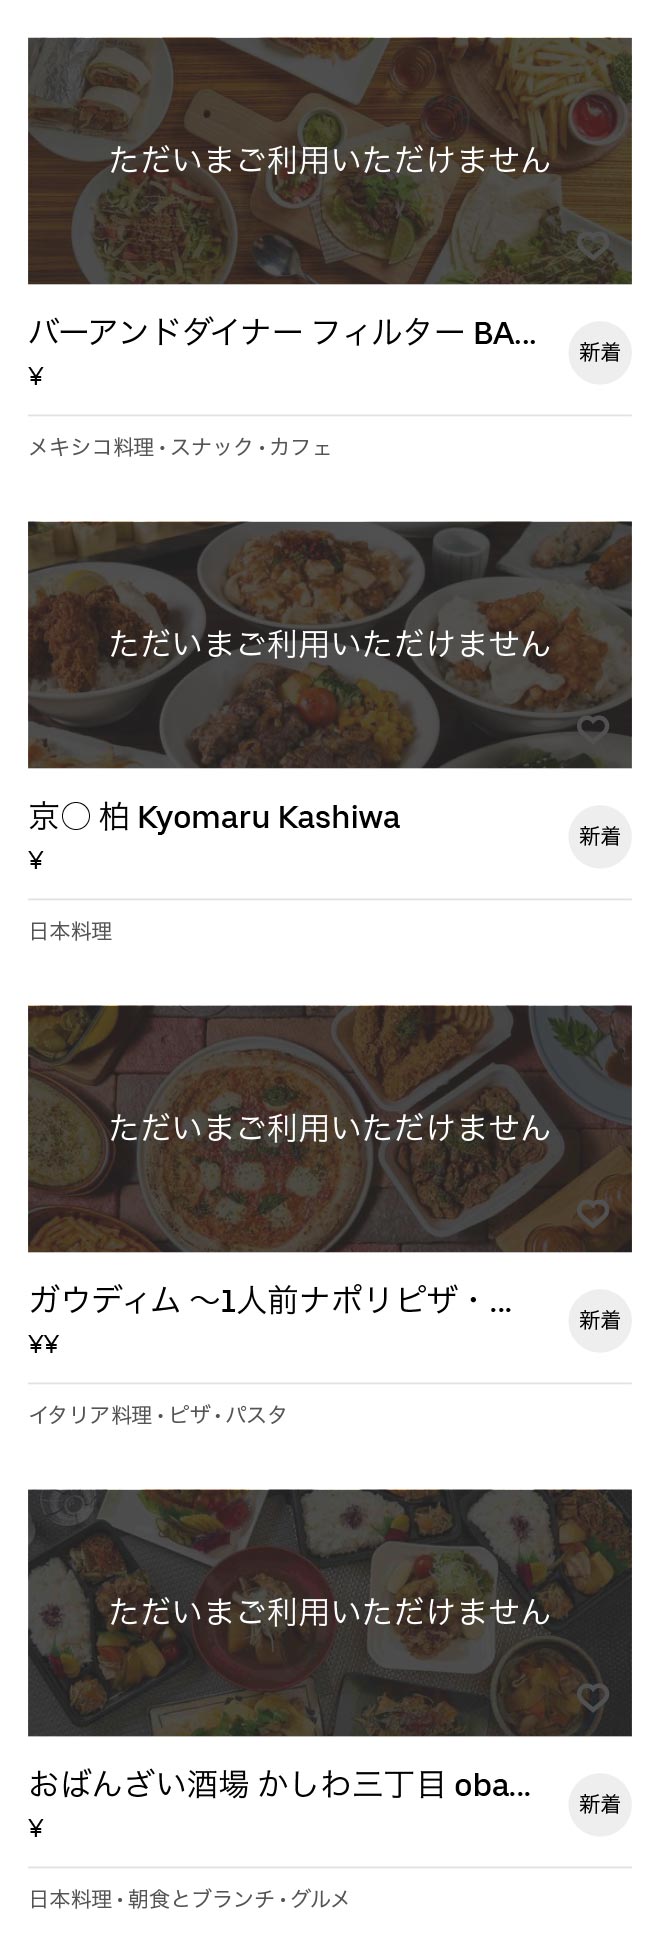 Minami kashiwa menu 2007 07